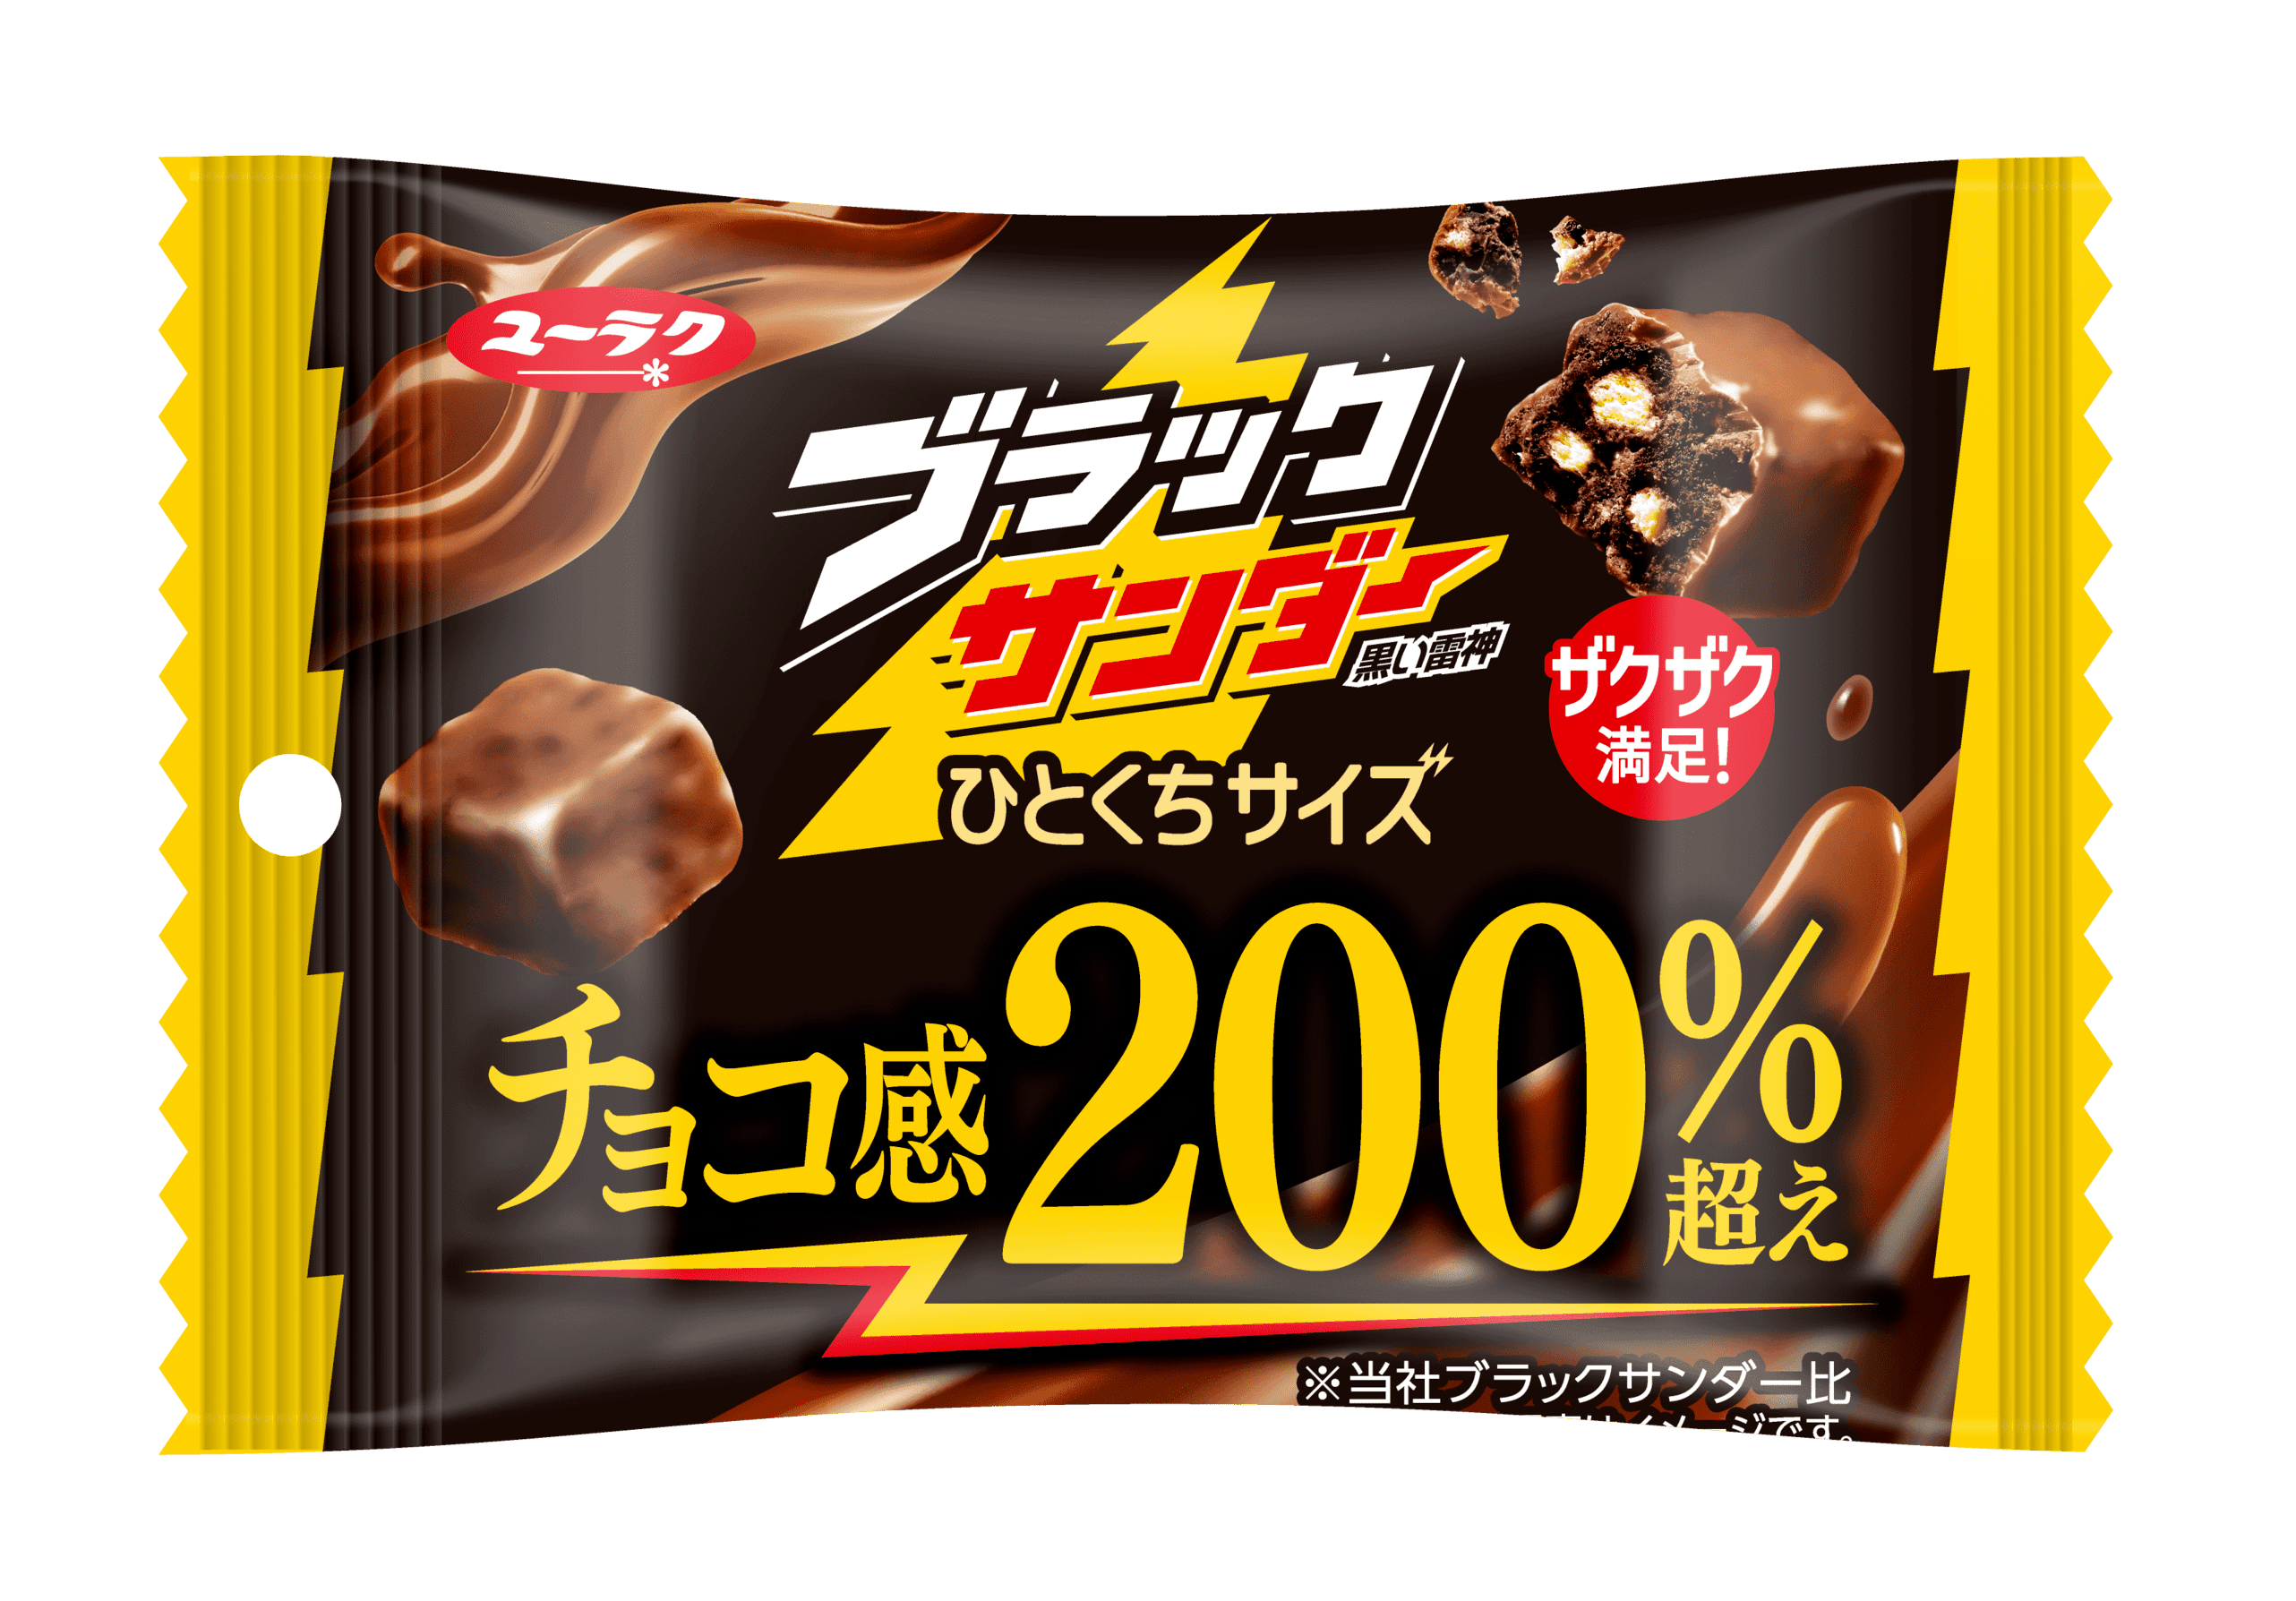 チョコ感200%超えのおいしさとザクザク感が1粒に！『ブラックサンダーひとくちサイズ』新発売　#Z世代Pick